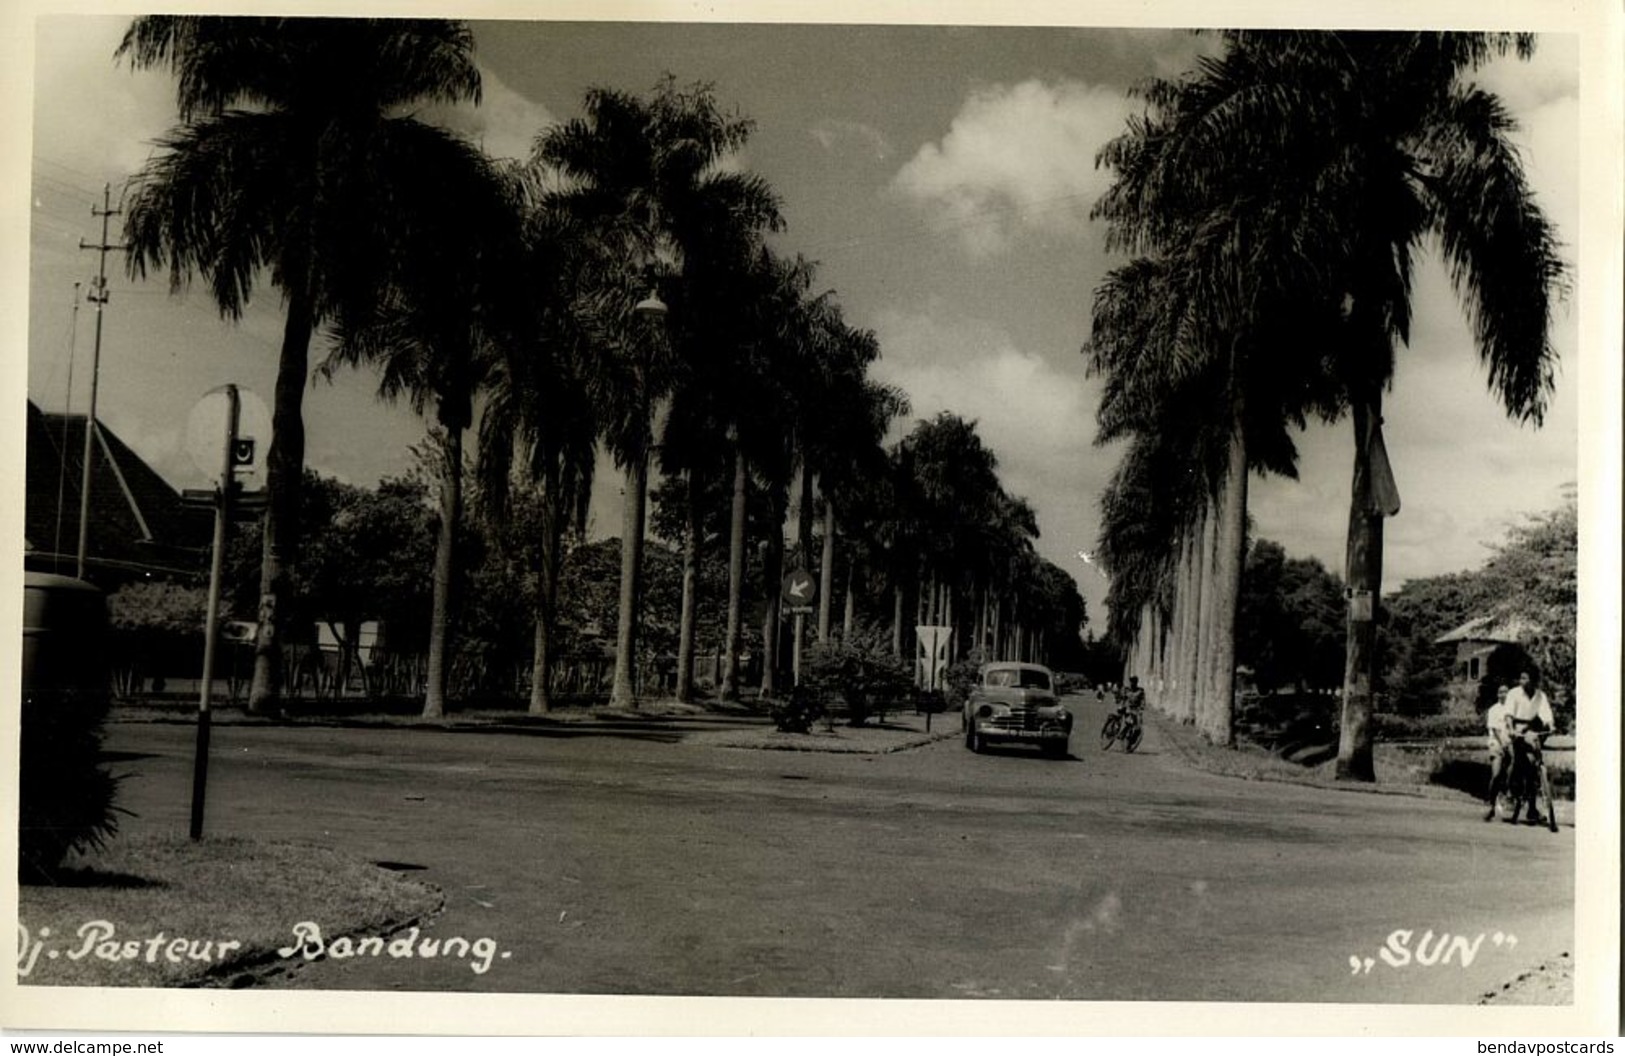 Indonesia, JAVA BANDUNG, Jalan Pasteur, Car (1940s) SUN RPPC Postcard - Indonesië